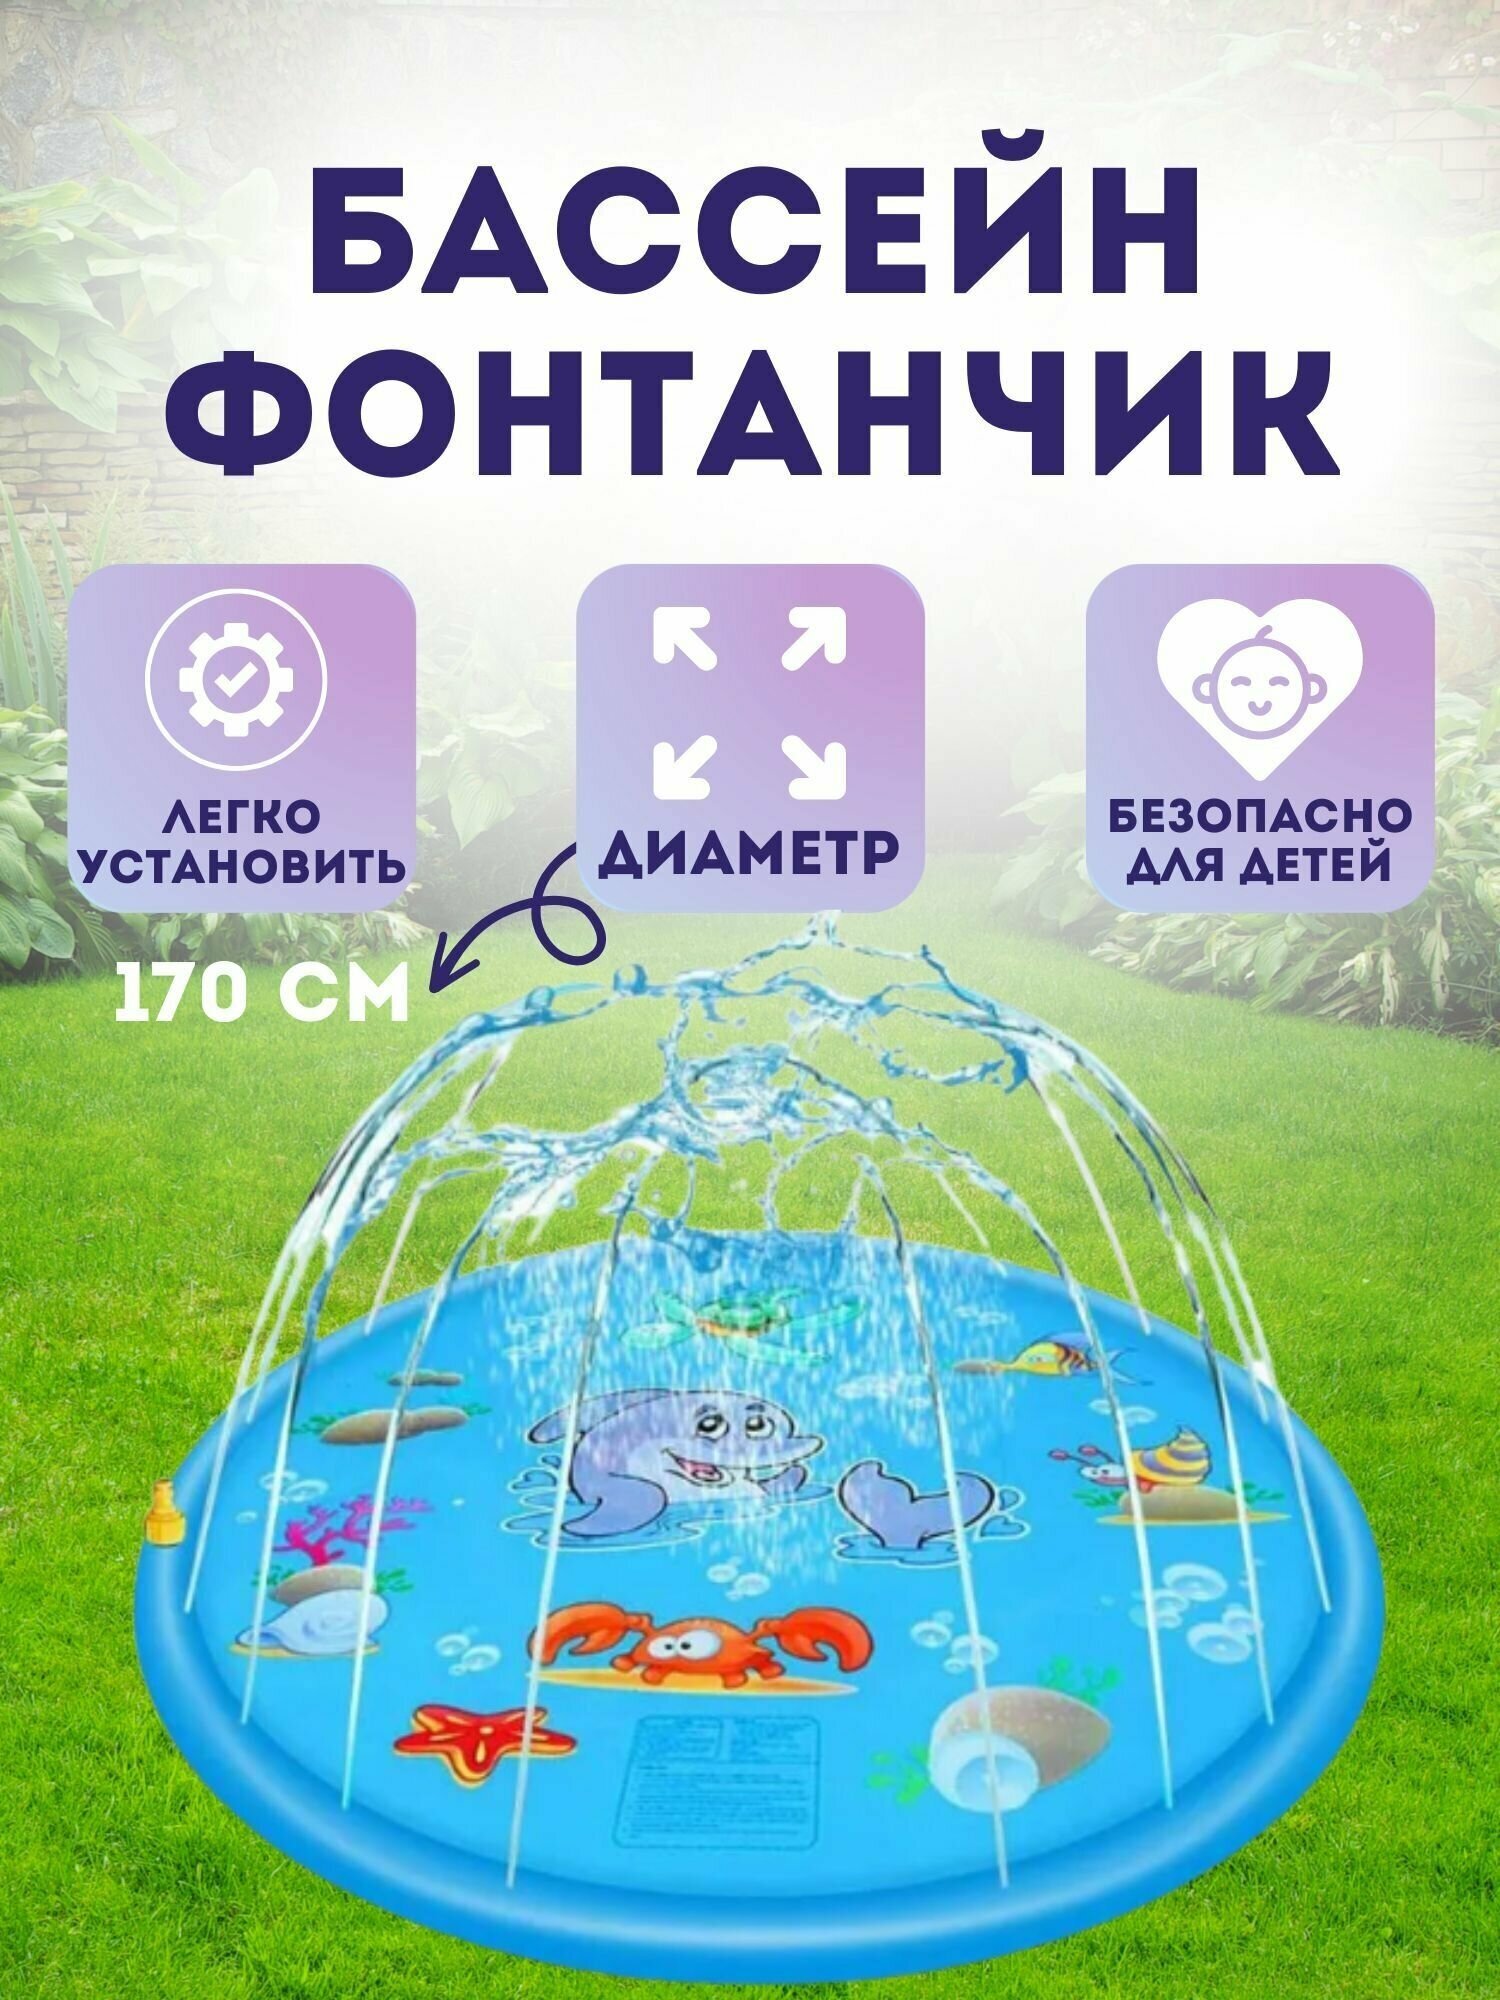 Бассейн-фонтанчик для детей